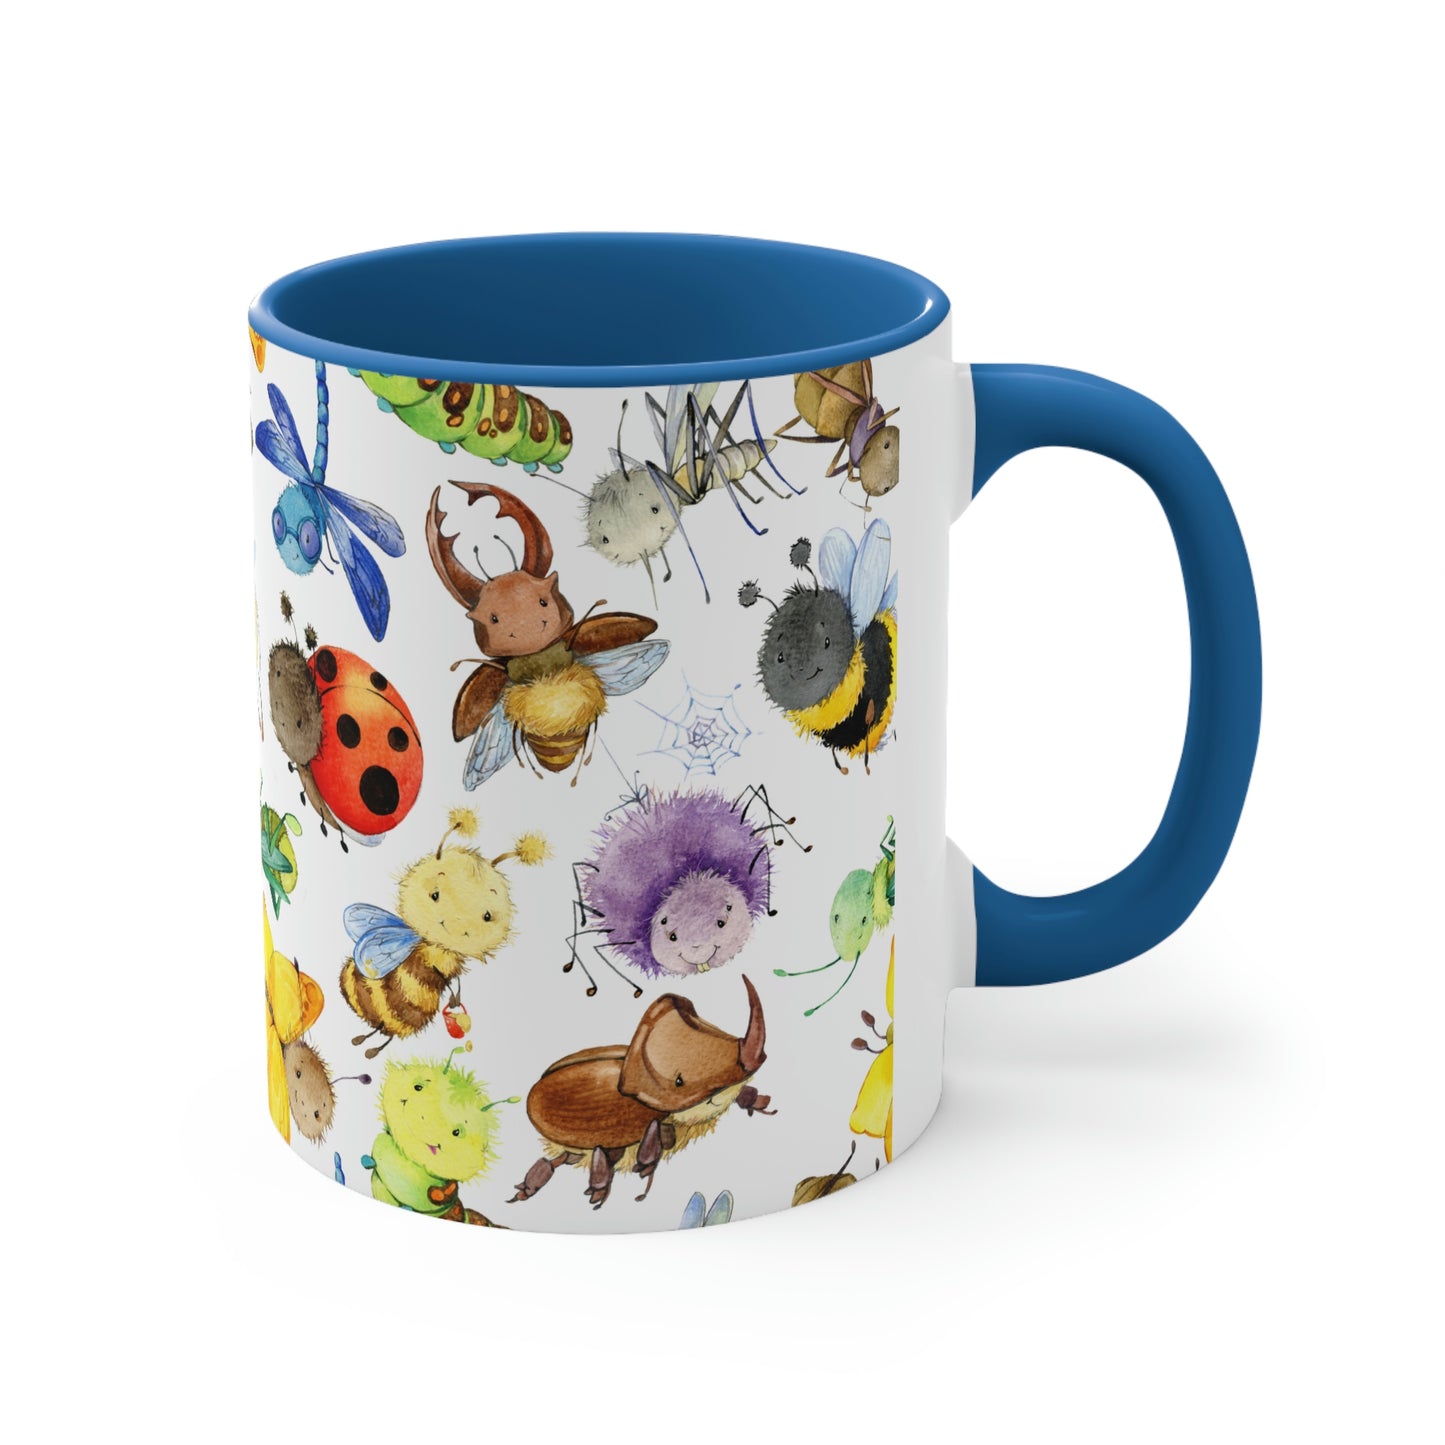 Ladybugs, Bees and Dragonflies Coffee Mug, 11oz